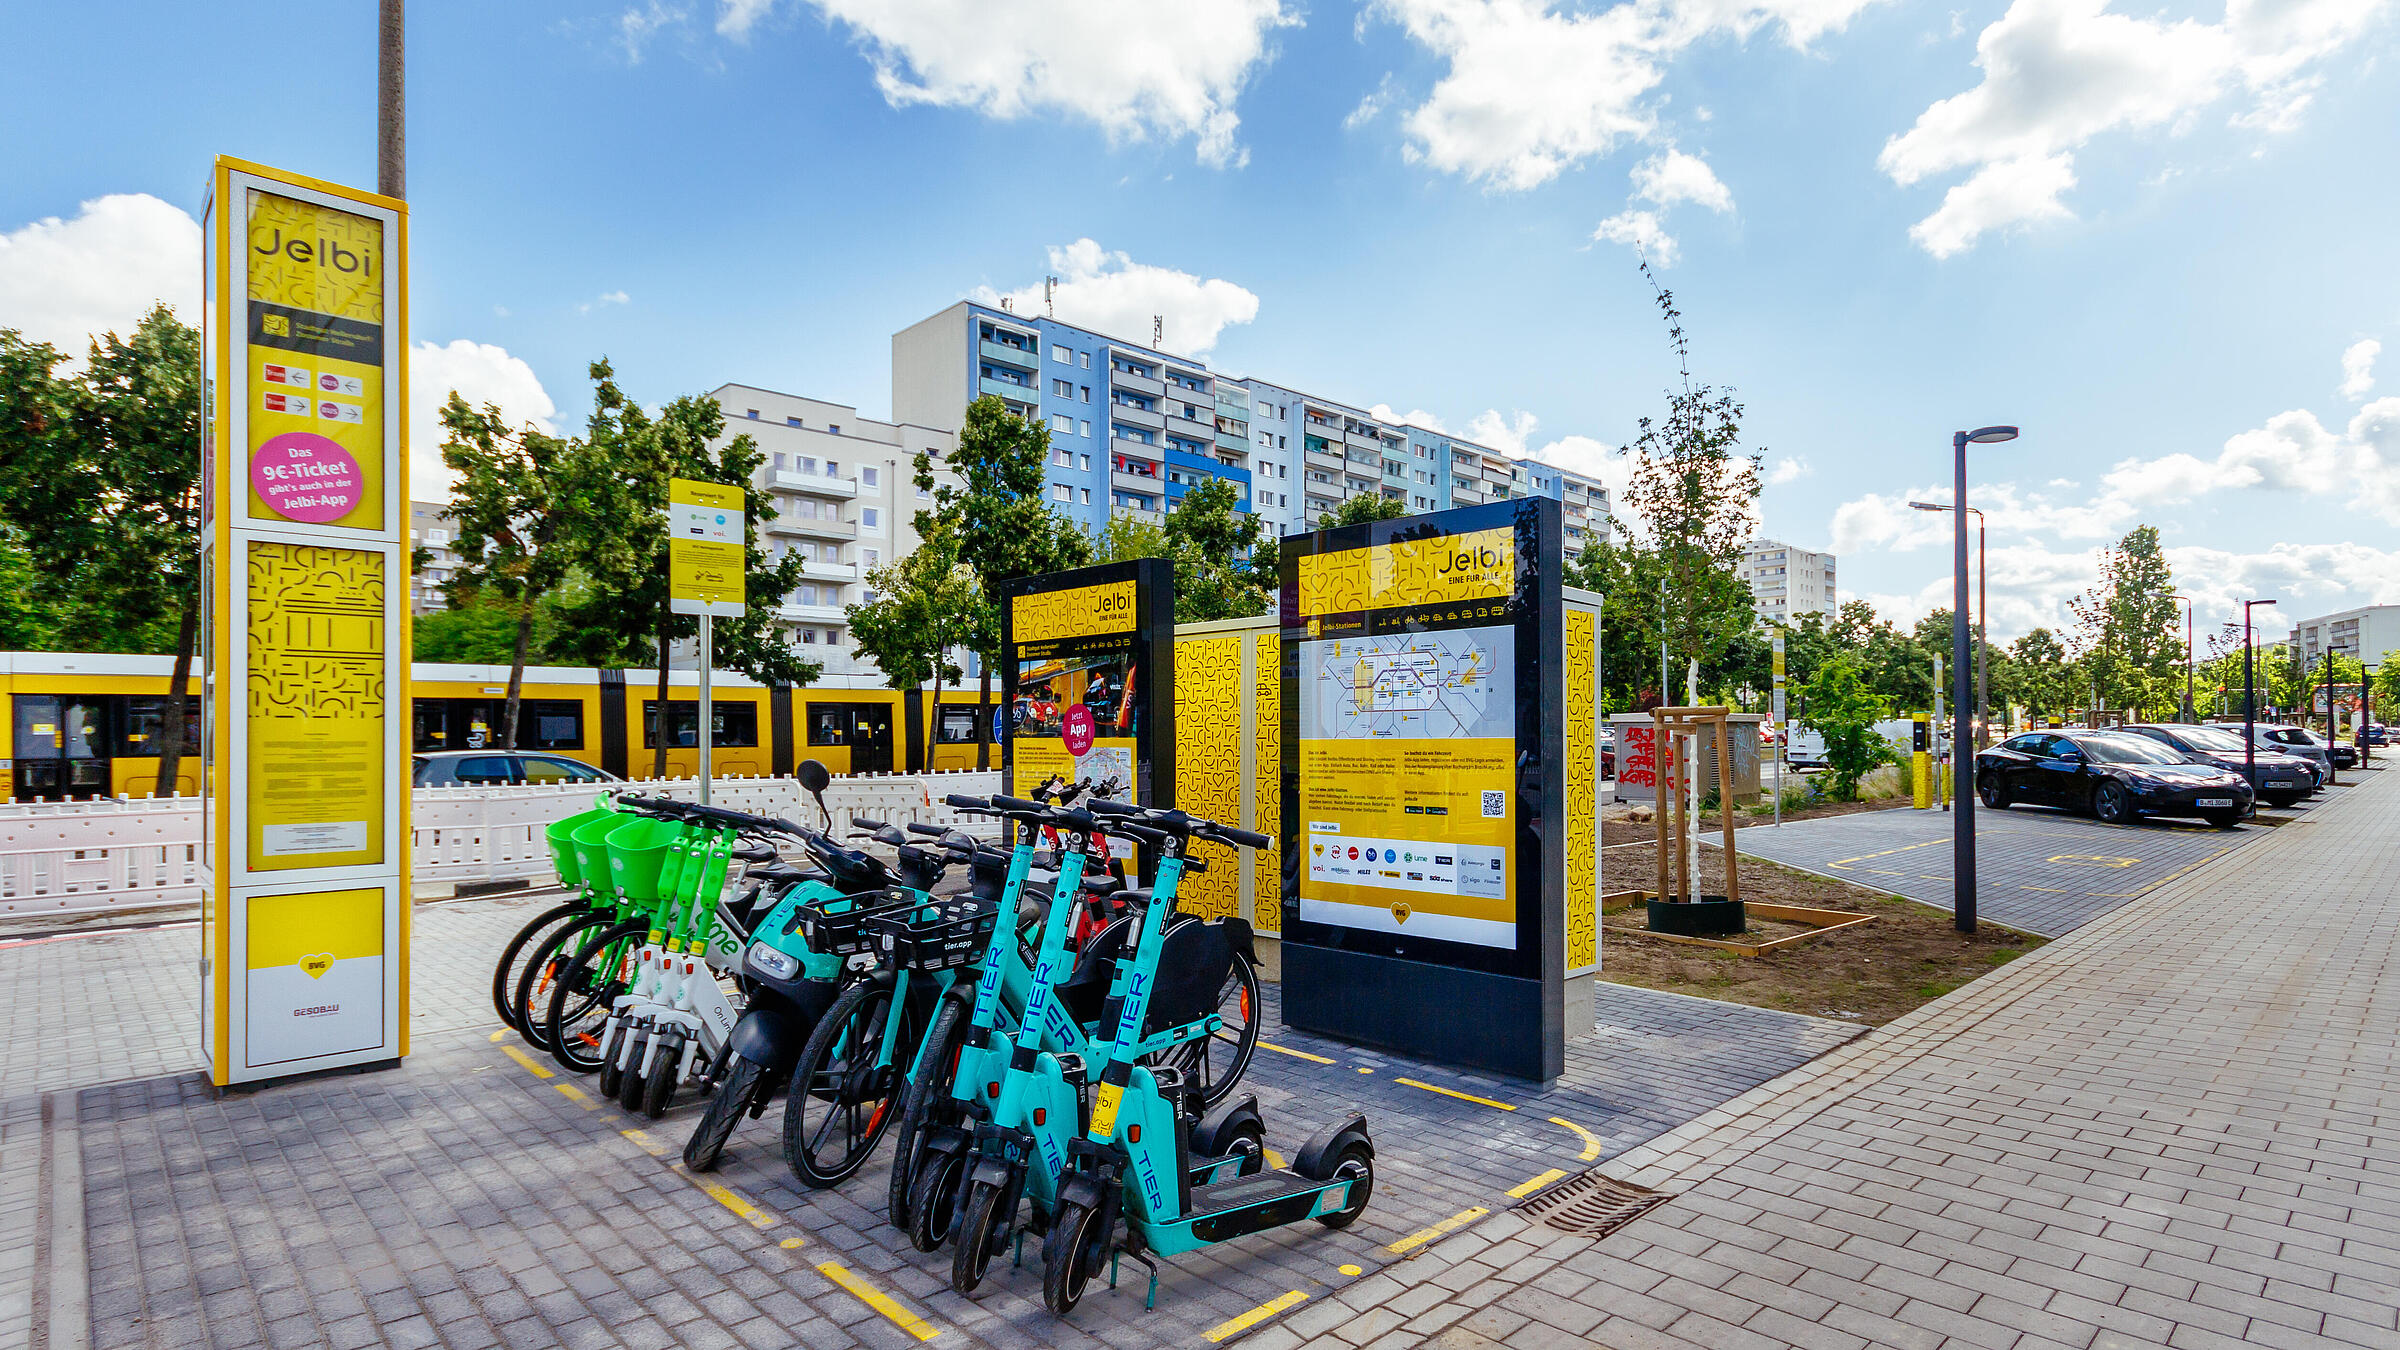 Jelbi-Station mit verschiedenen Zweirädern